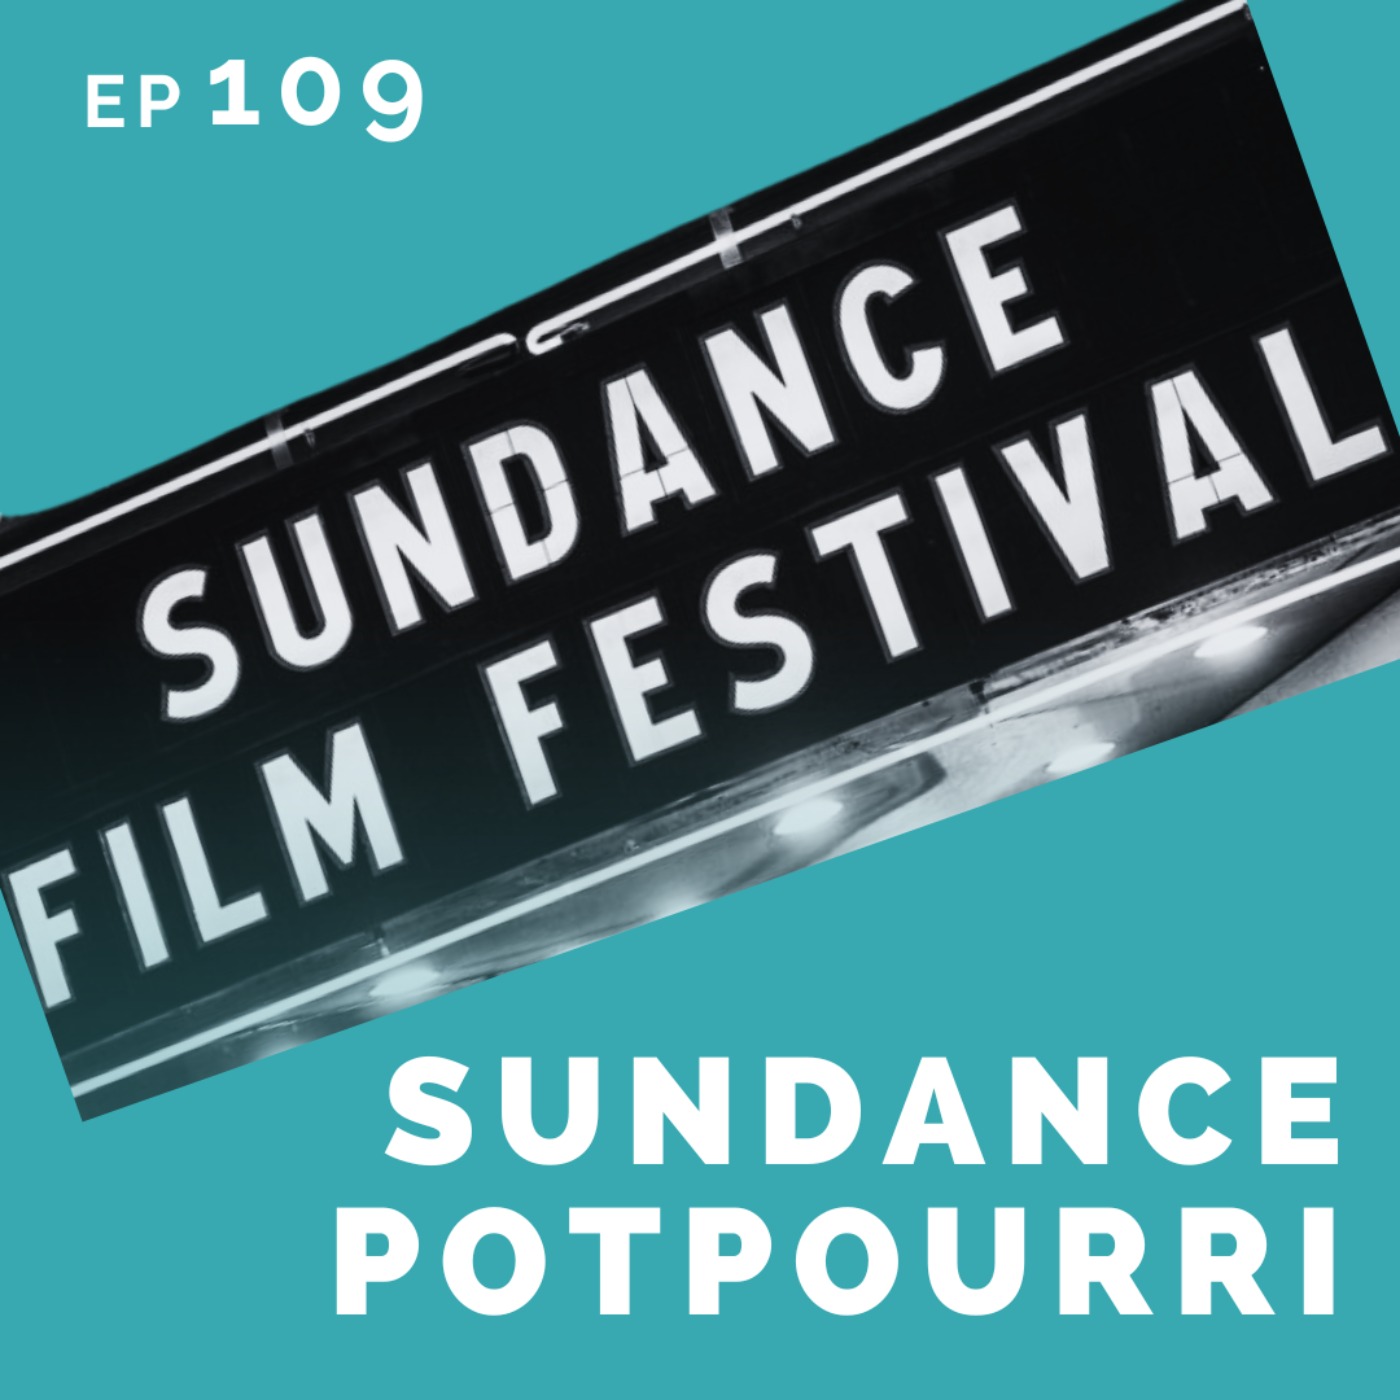 EP 109: Sundance Potpourri